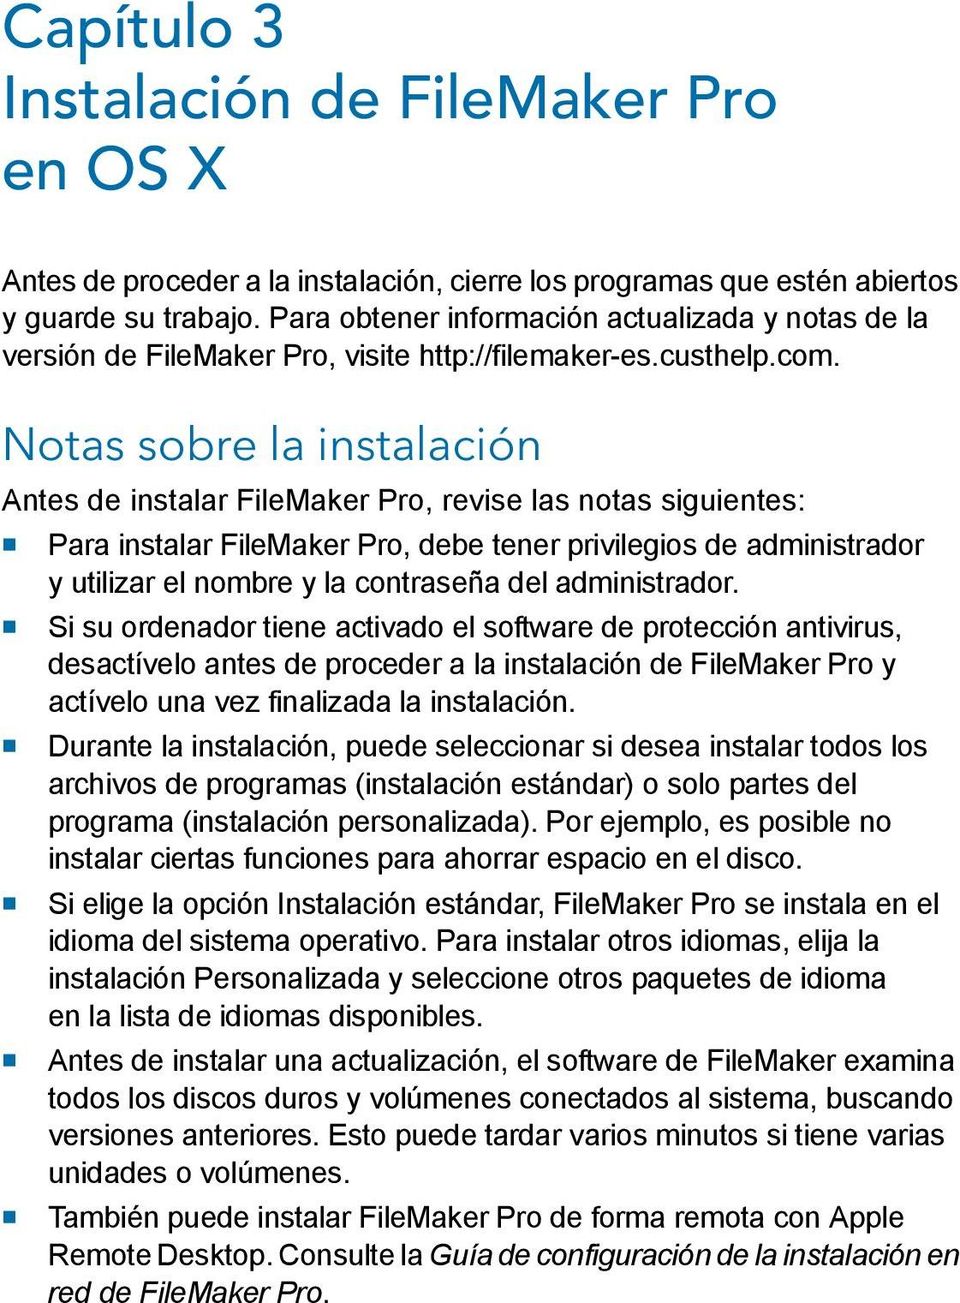 Notas sobre la instalación Antes de instalar FileMaker Pro, revise las notas siguientes: 1 Para instalar FileMaker Pro, debe tener privilegios de administrador y utilizar el nombre y la contraseña